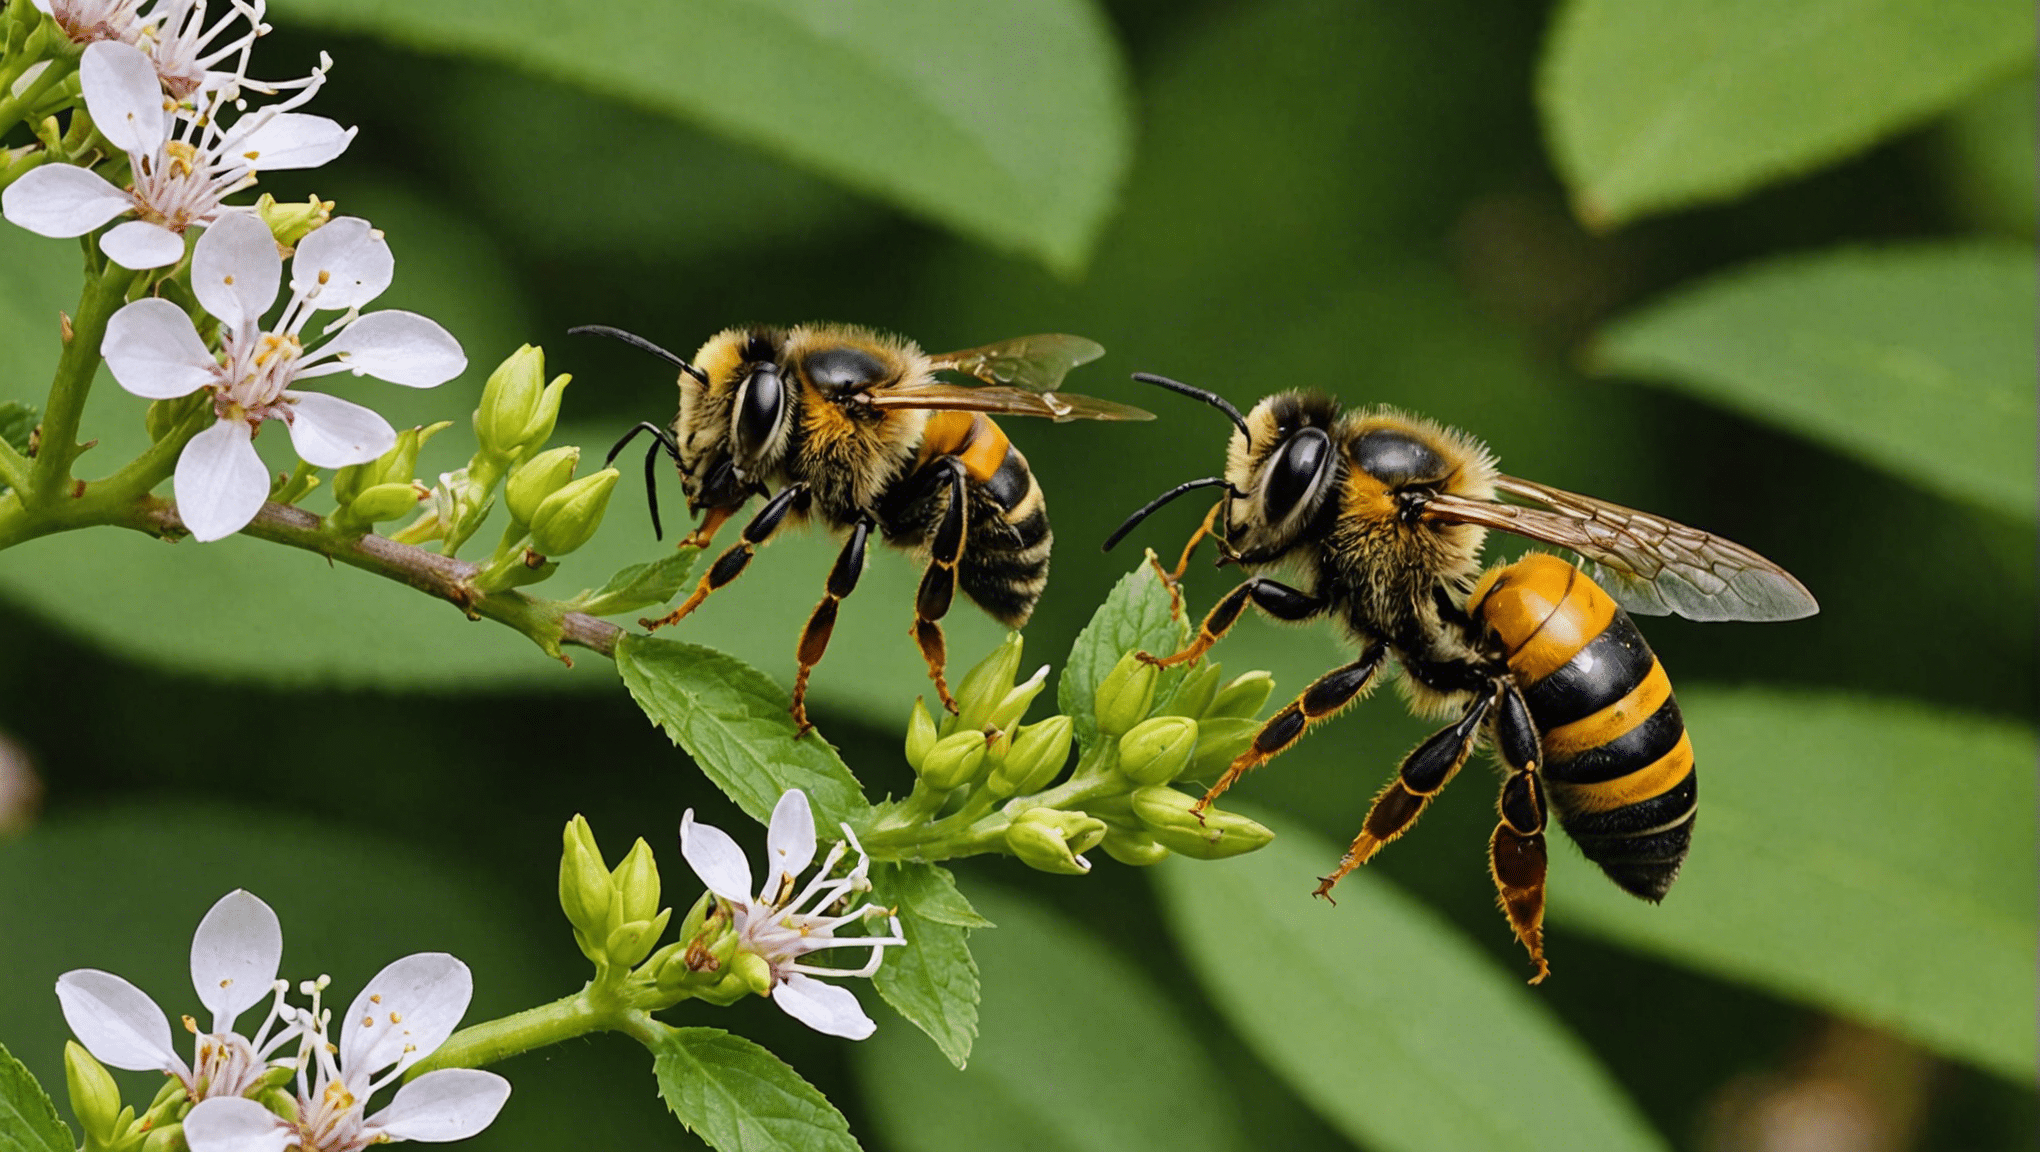 descubra as distinções entre abelhas, vespas e vespas e aprenda sobre sua aparência, comportamento e habitats.